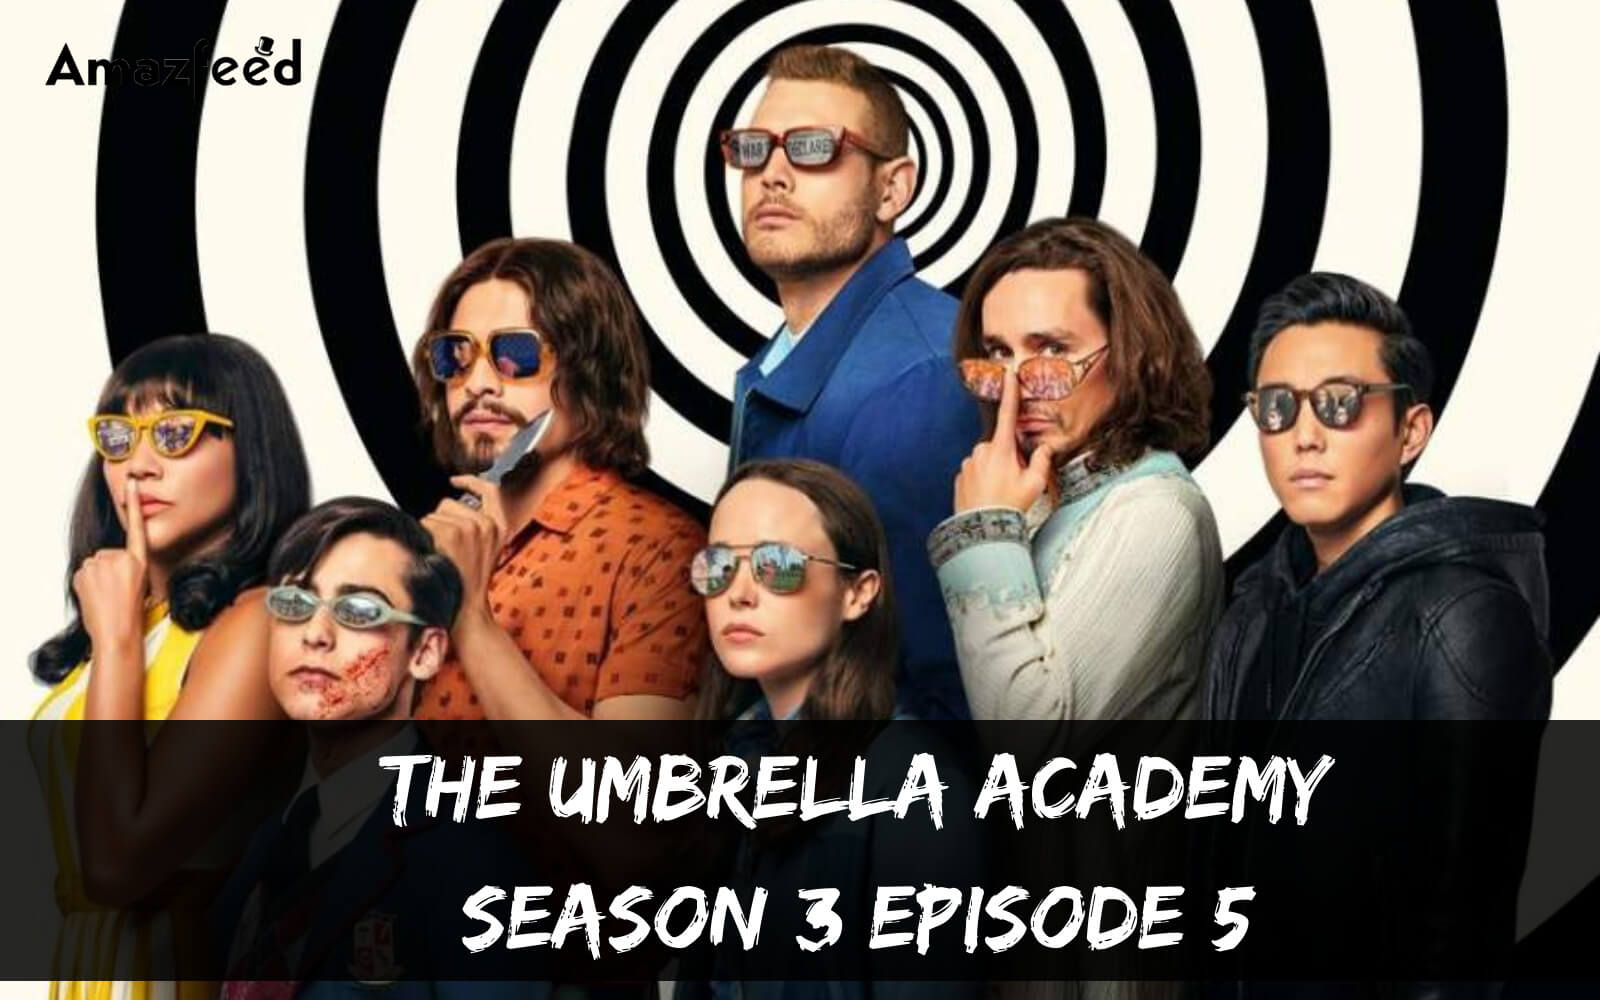 The Umbrella Academy season 3 Episode 5 release date